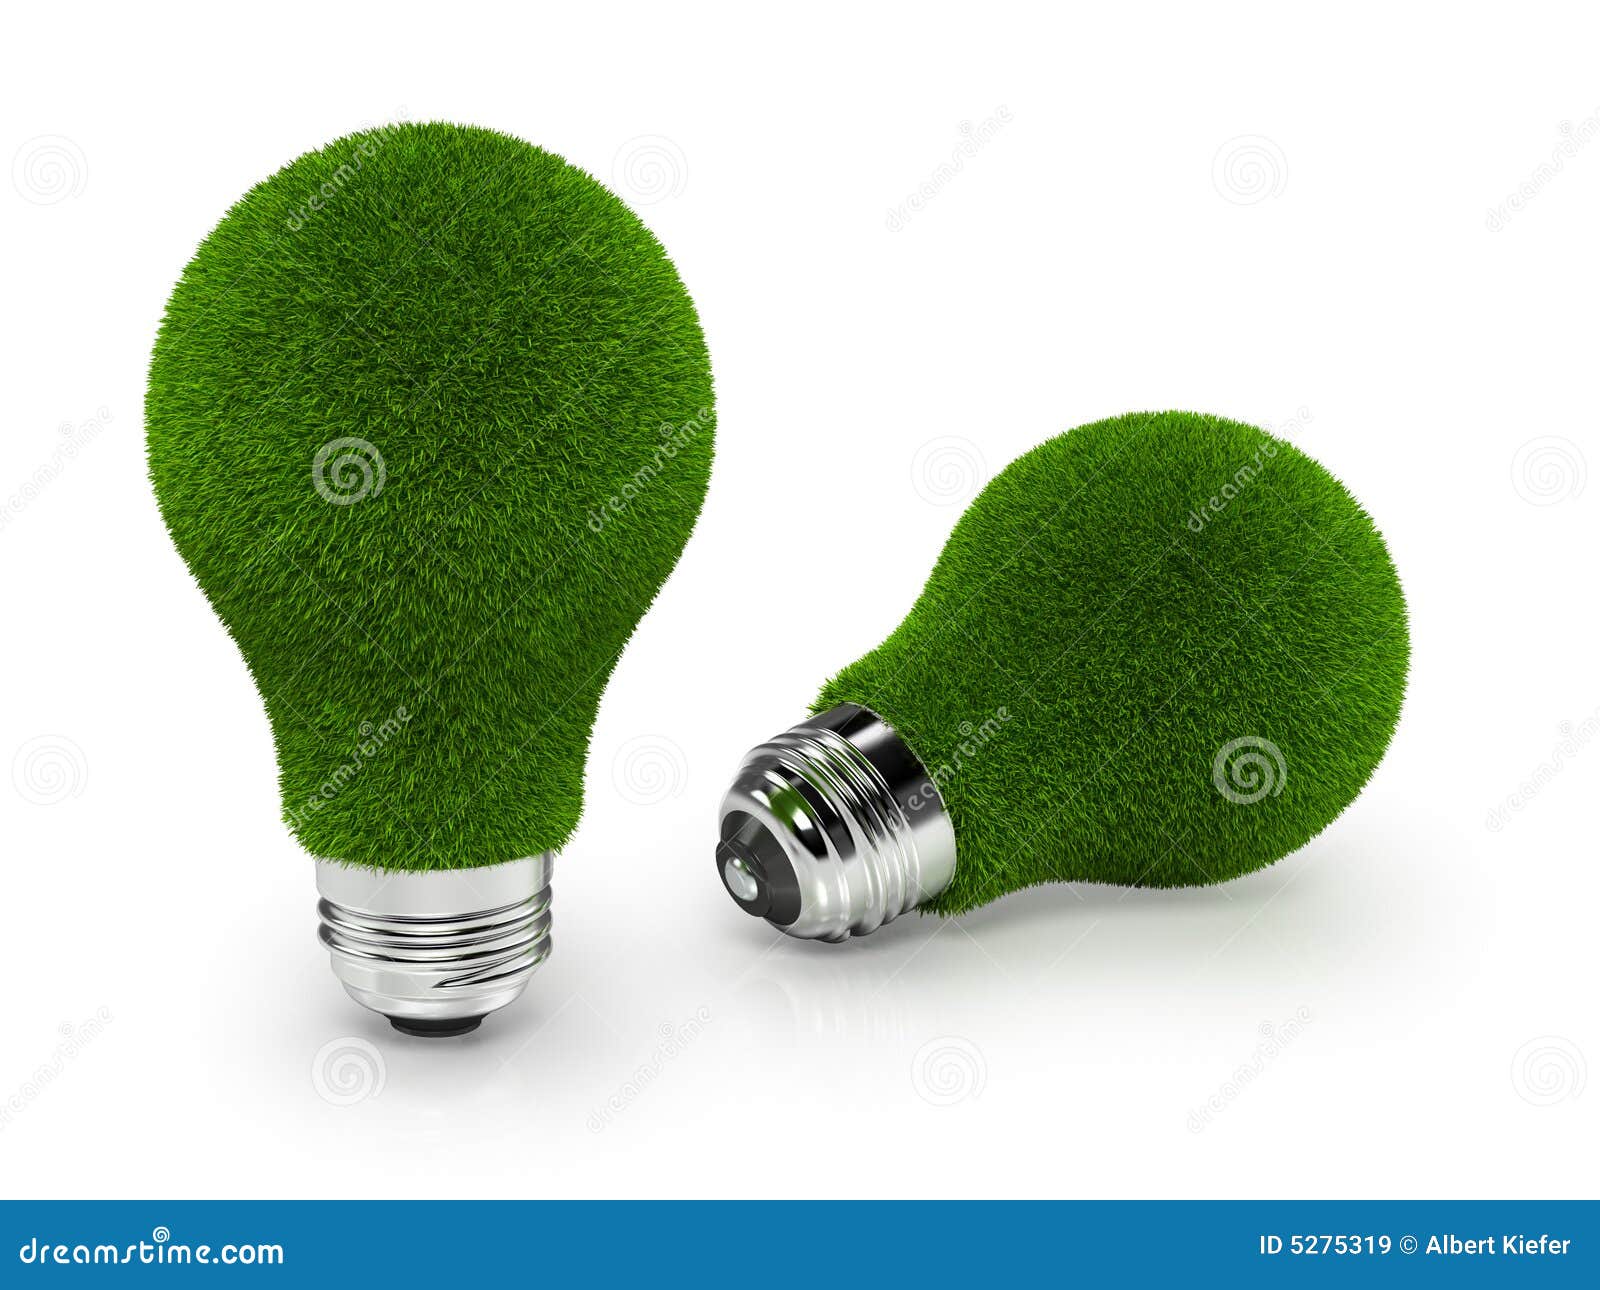 Milieuvriendelijke Bollen. Een reeks van 2 groene bollen die op een witte achtergrond wordt geïsoleerdc, die de bollen van de ecologievriend afschildert.